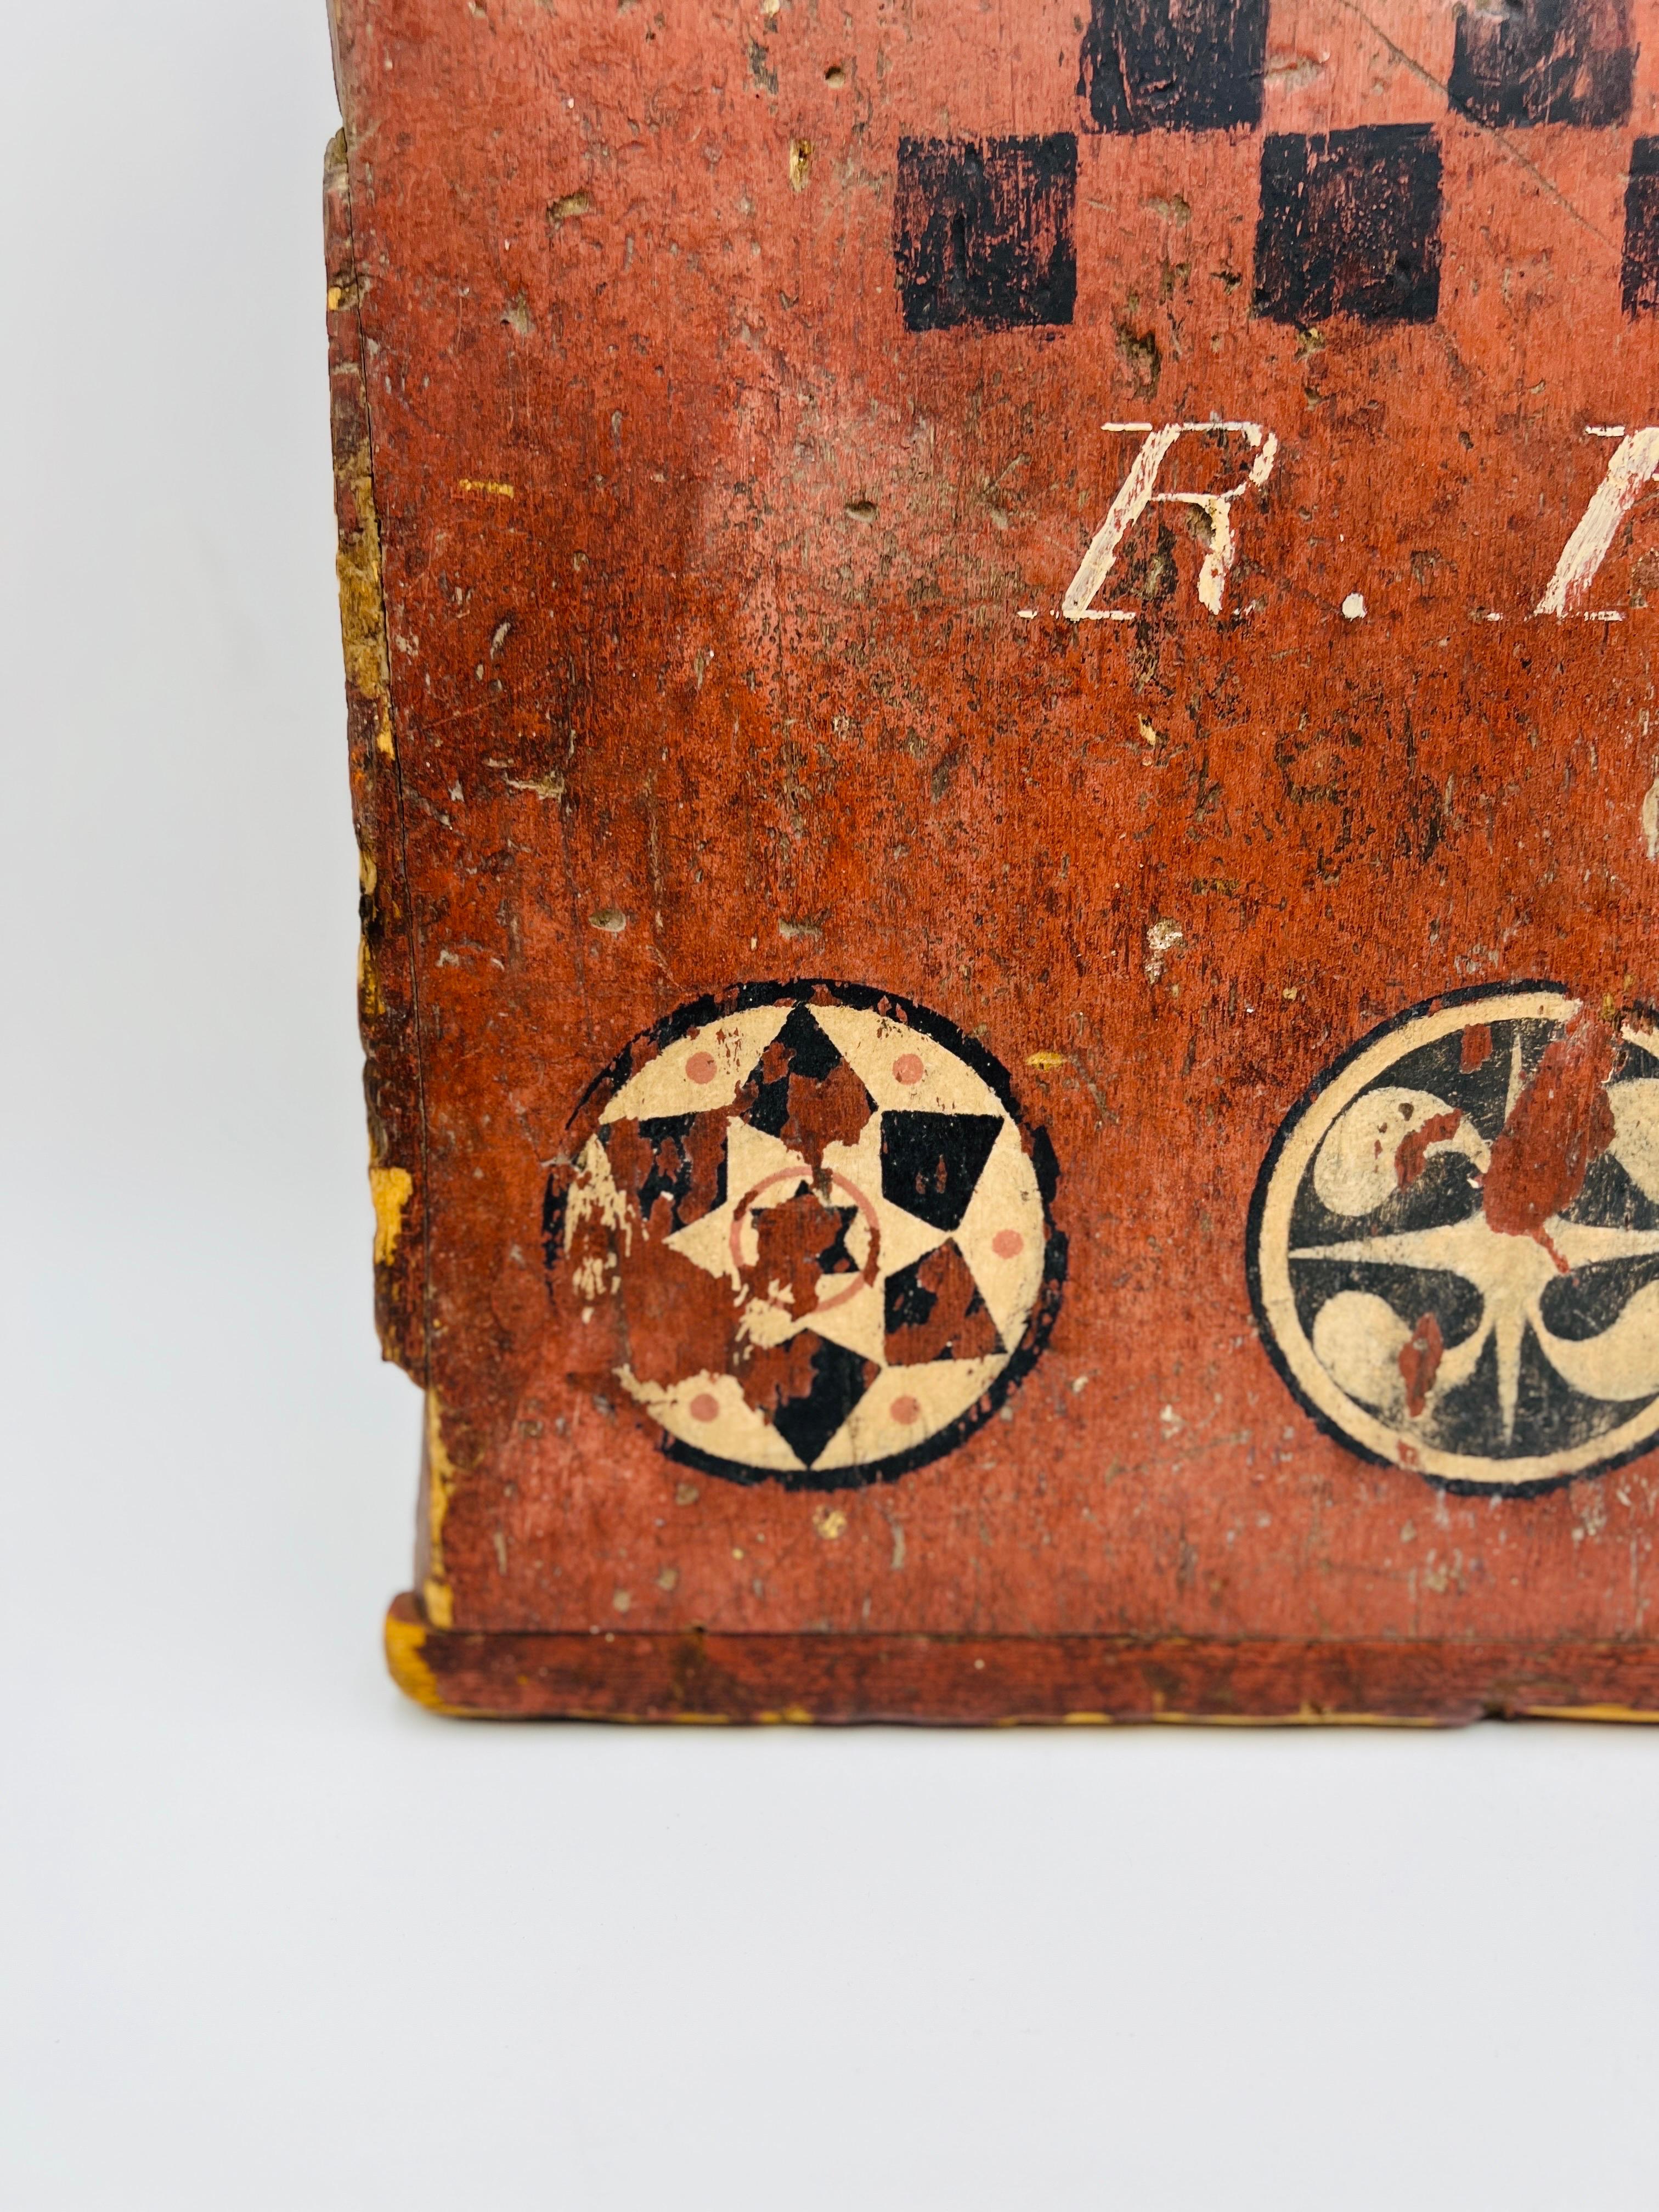 Seltenes antikes amerikanisches Volkskunst-Kartenbrett aus dem Jahr 1814, primitive Kunst. 
Ein sehr ungewöhnliches primitives amerikanisches Spielbrett aus dem 19. Jahrhundert, das aus einem antiken Kofferraumdeckel hergestellt wurde. Das bemalte